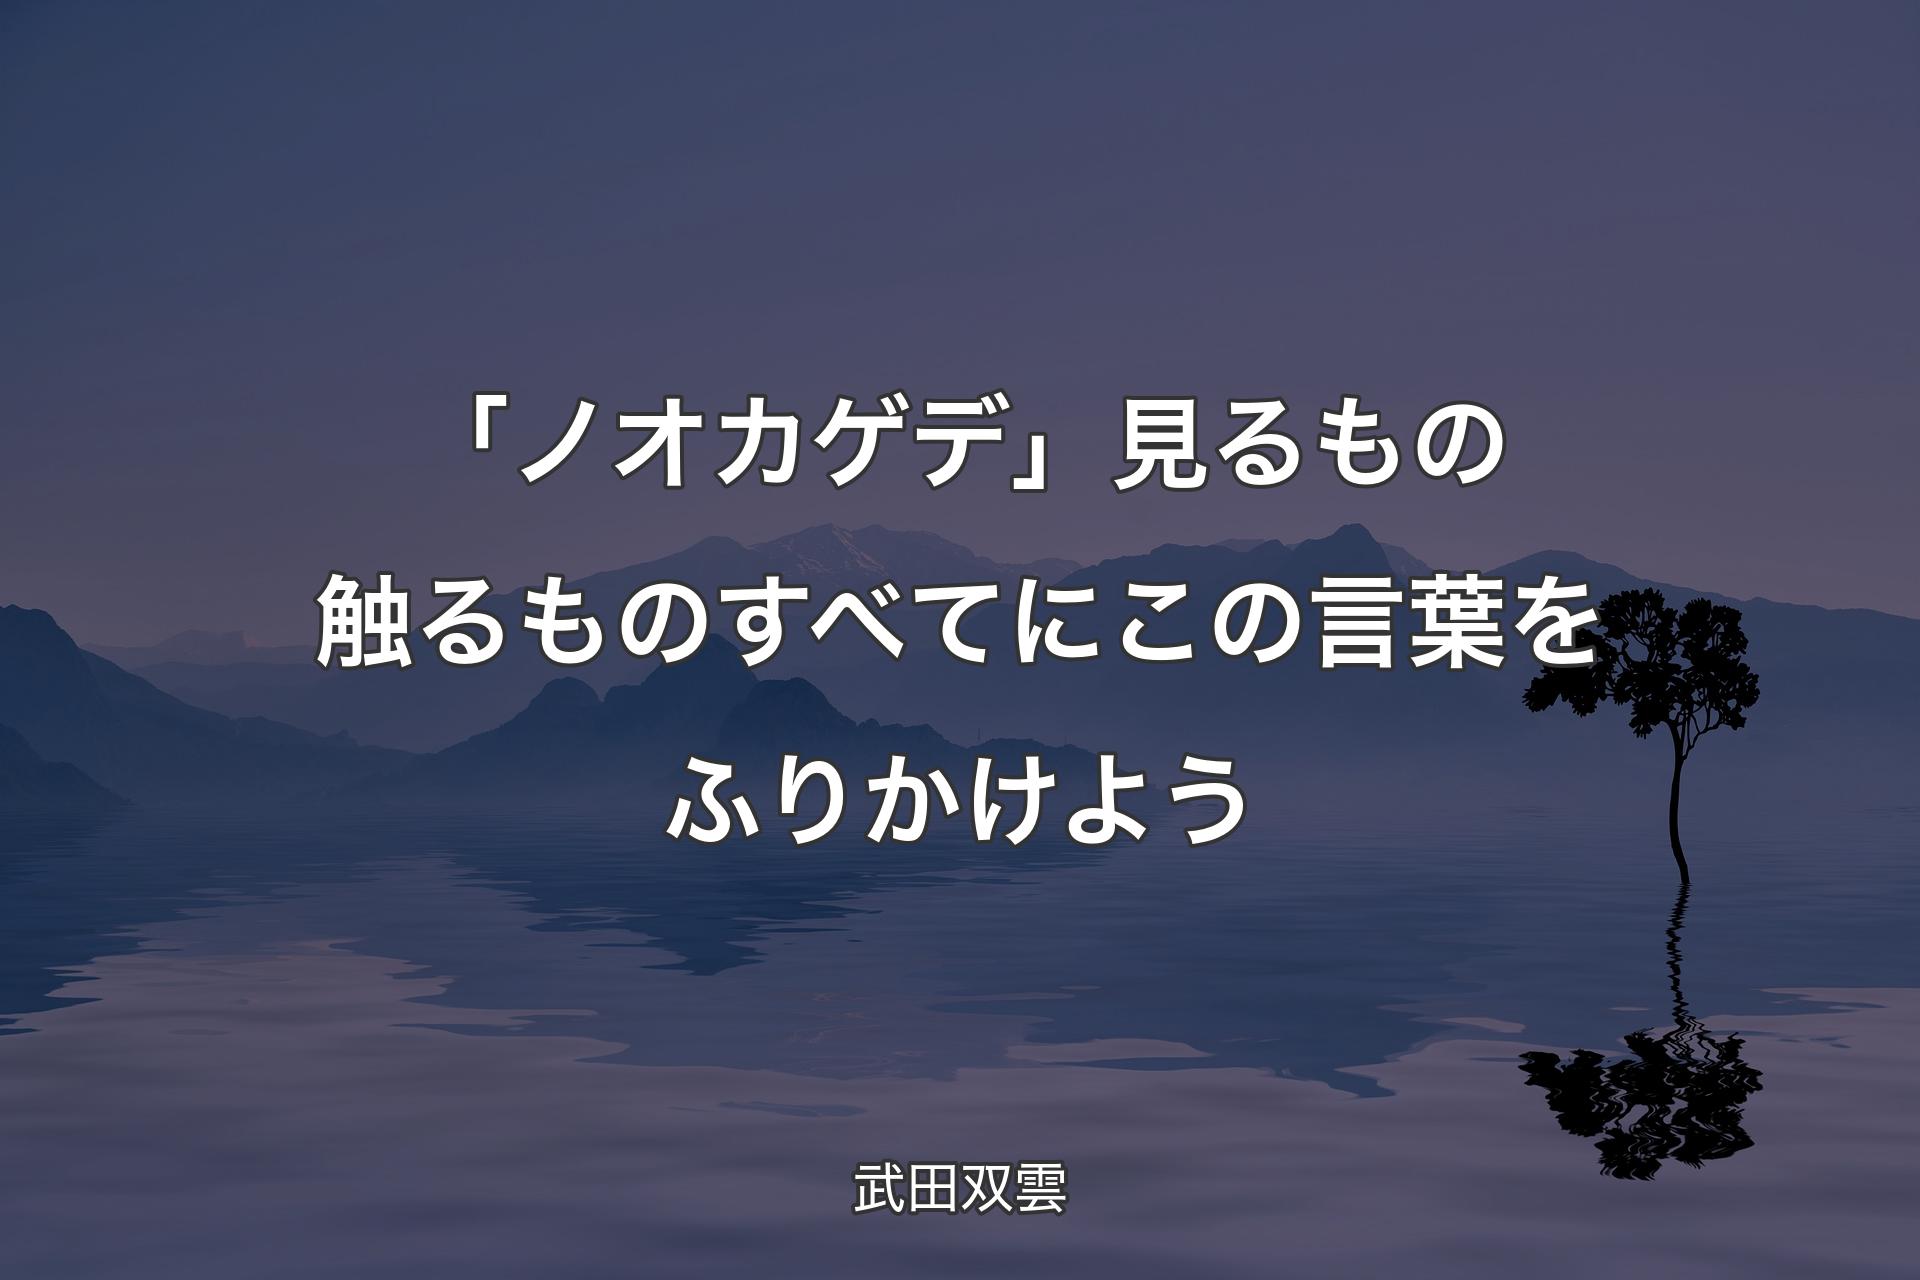 「ノオカゲデ」見るもの触るものすべてにこの言葉をふりかけよう - 武�田双雲